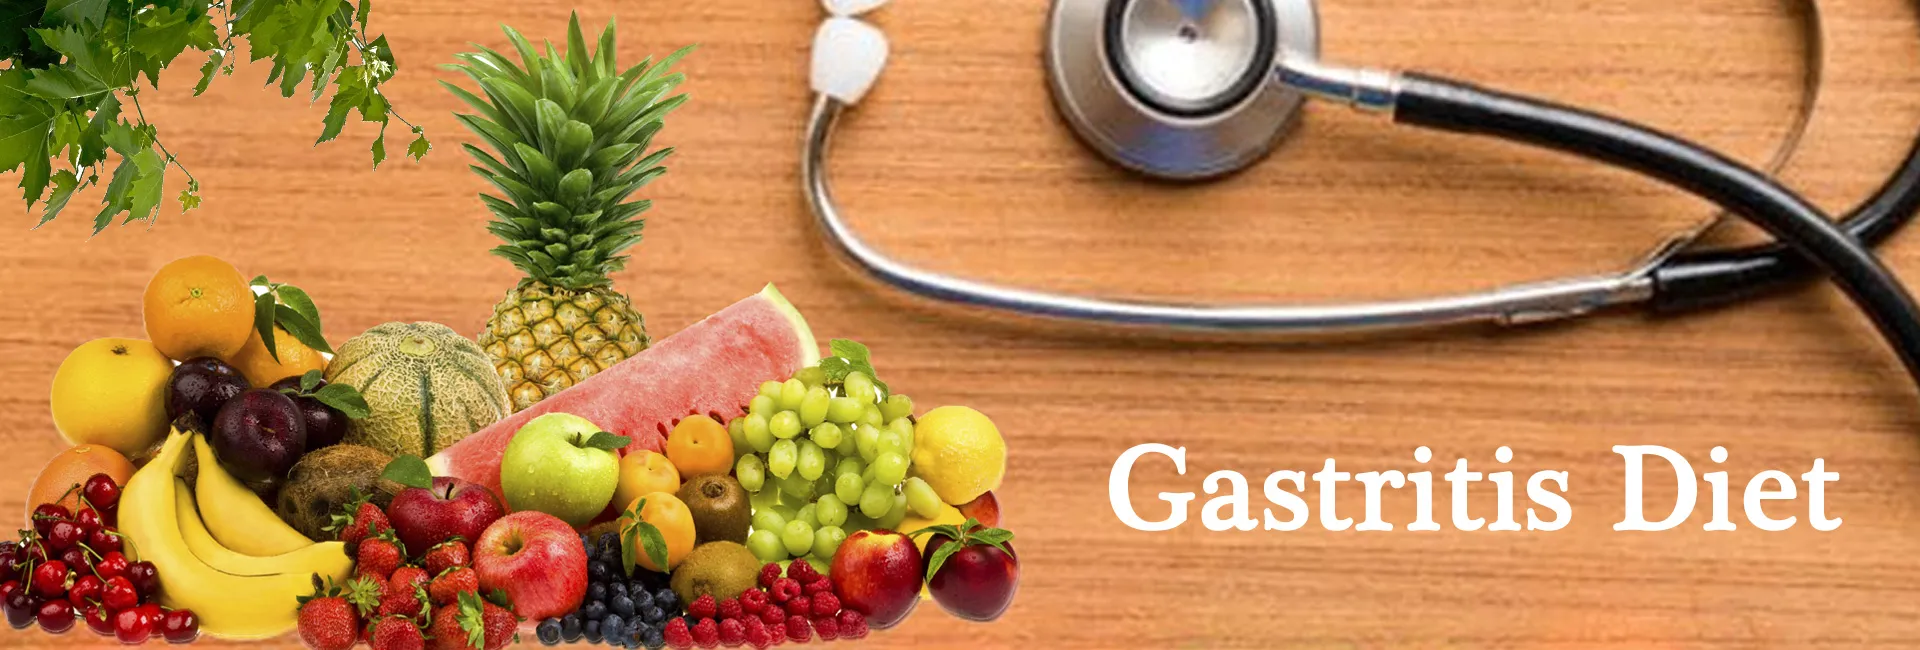 Gastritis Diet In Mono